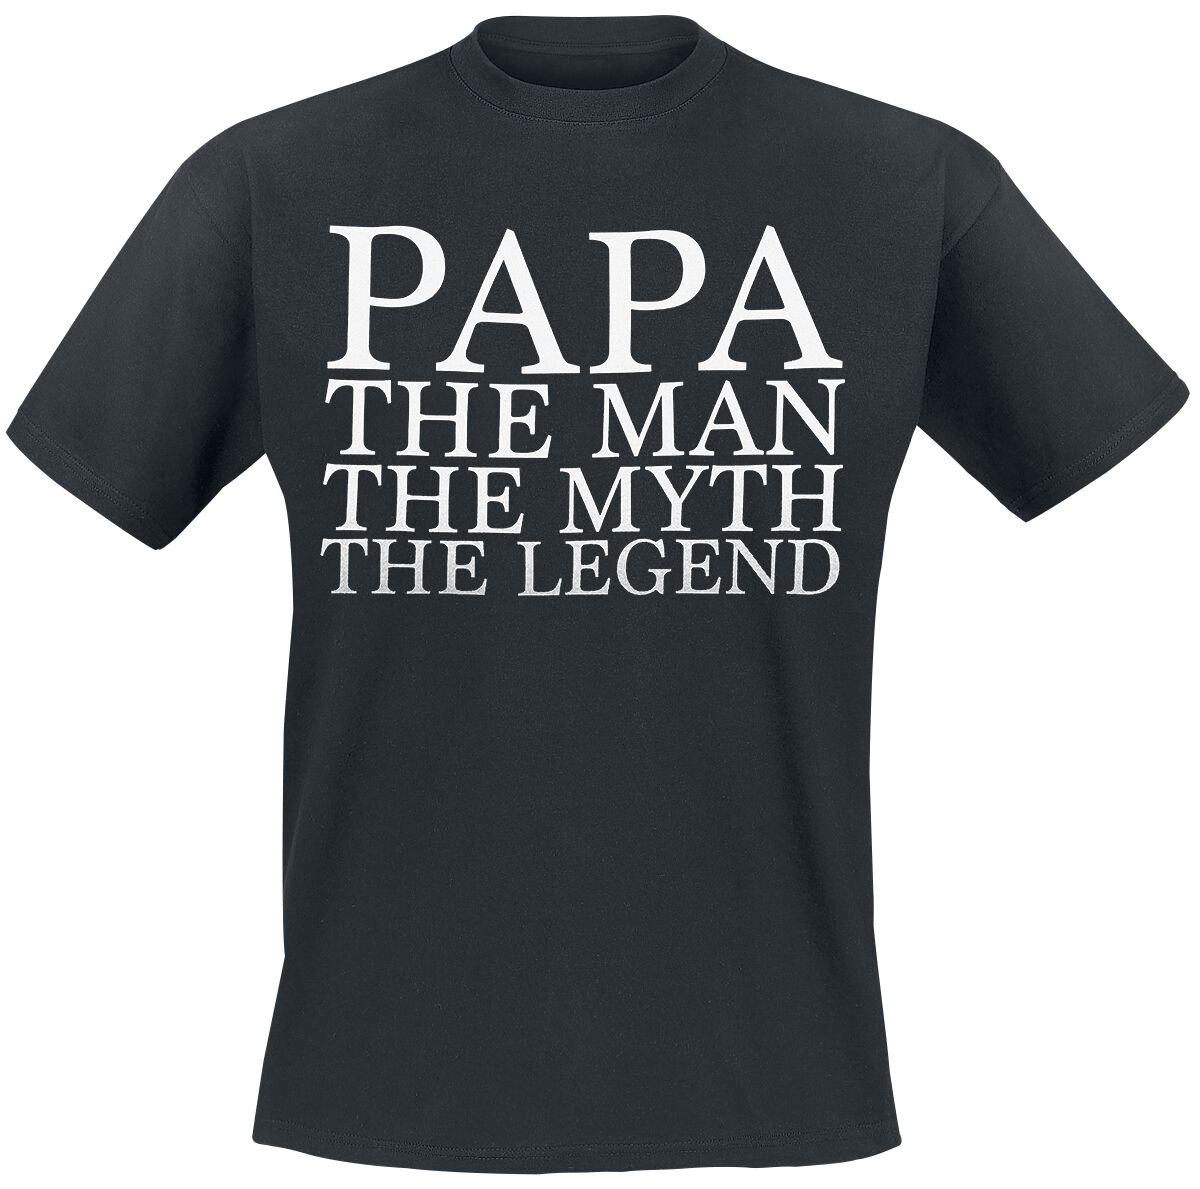 Familie & Freunde T-Shirt - Papa - The Man - M bis 3XL - für Männer - Größe M - schwarz